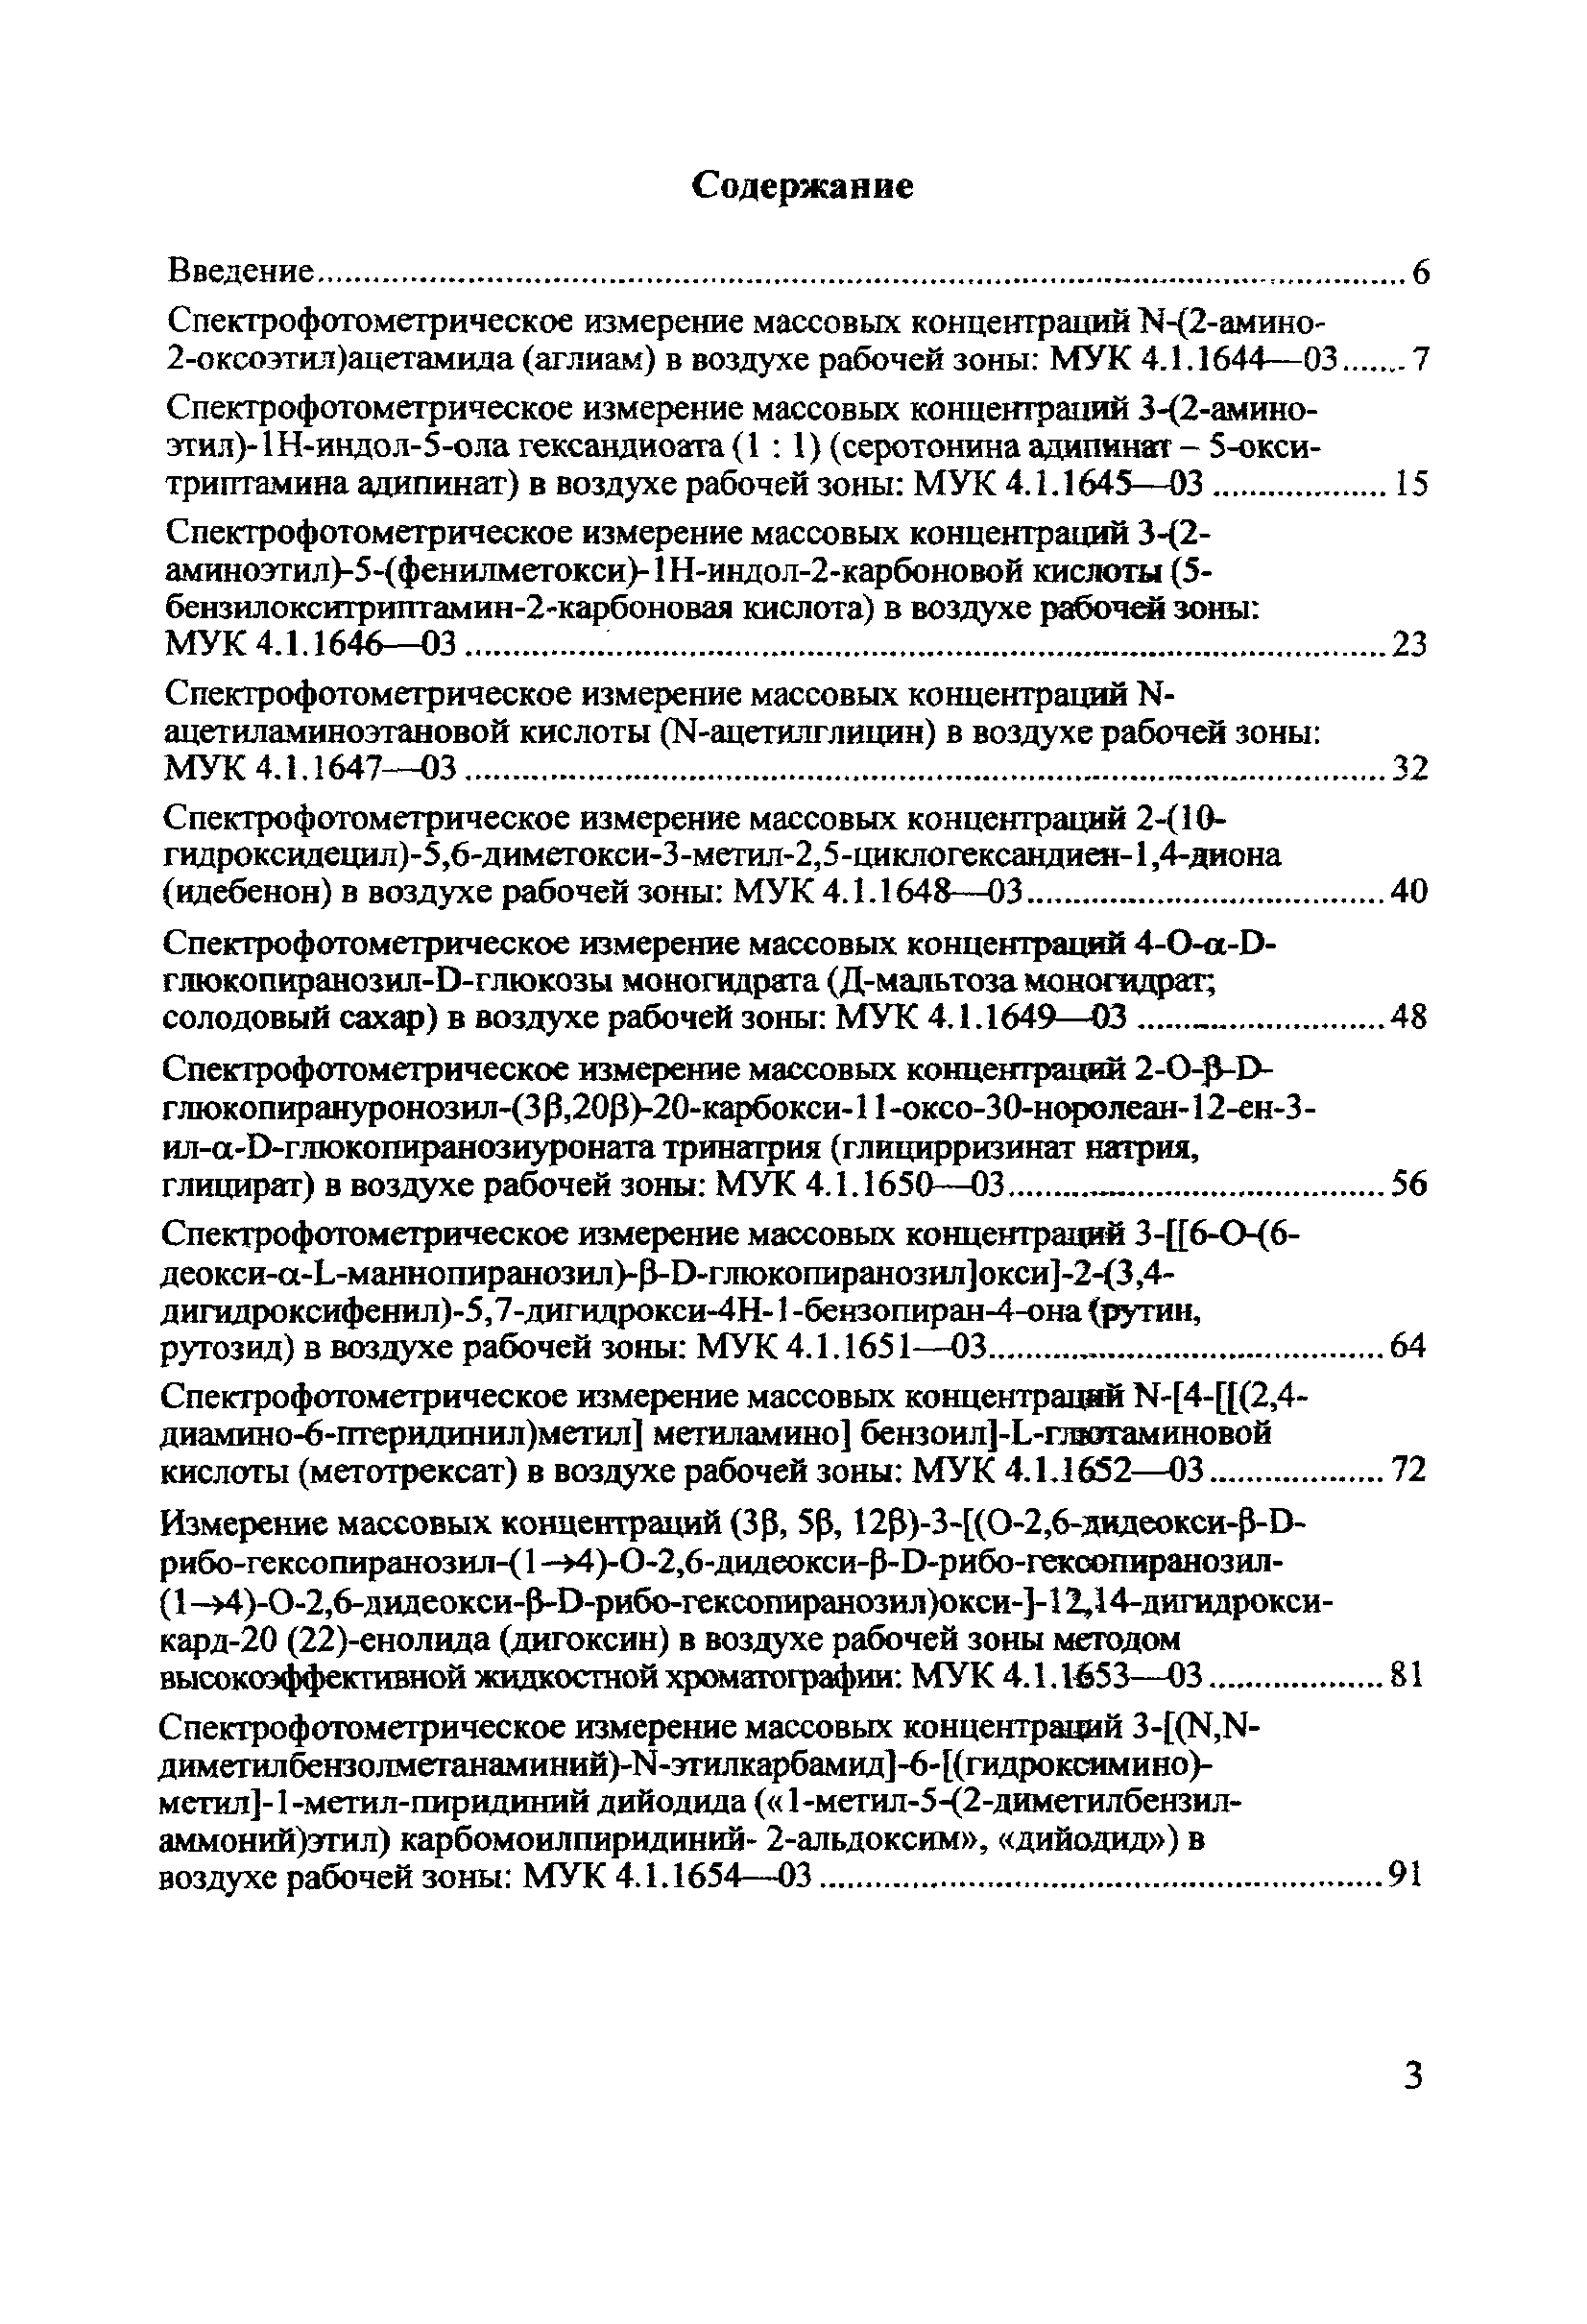 МУК 4.1.1665-03